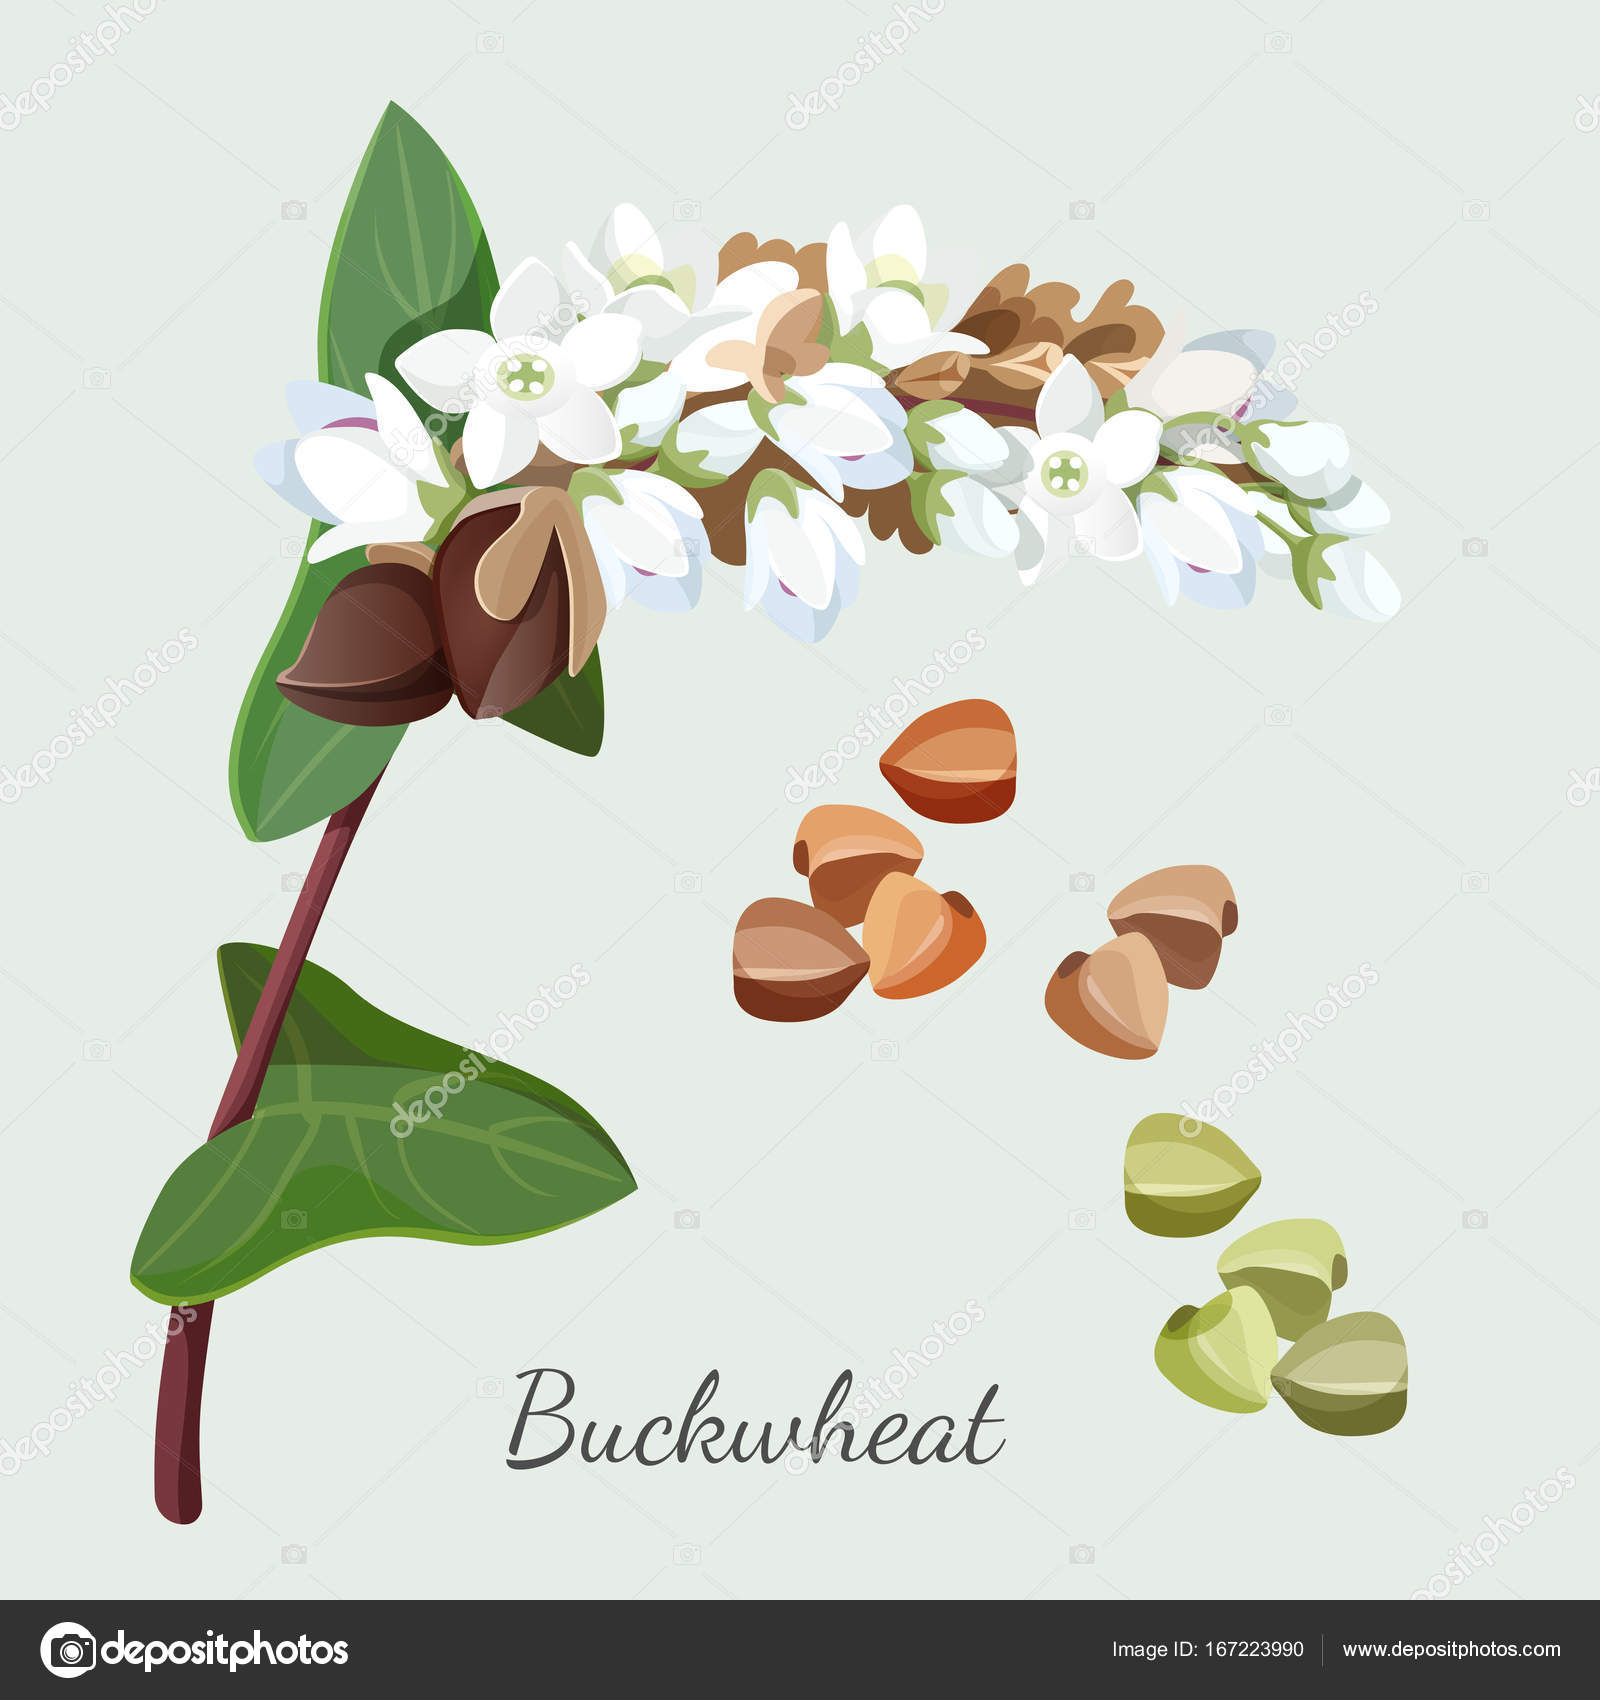 Buckwheat plant and seeds isolated illustration grey Stock Illustration ©godruma